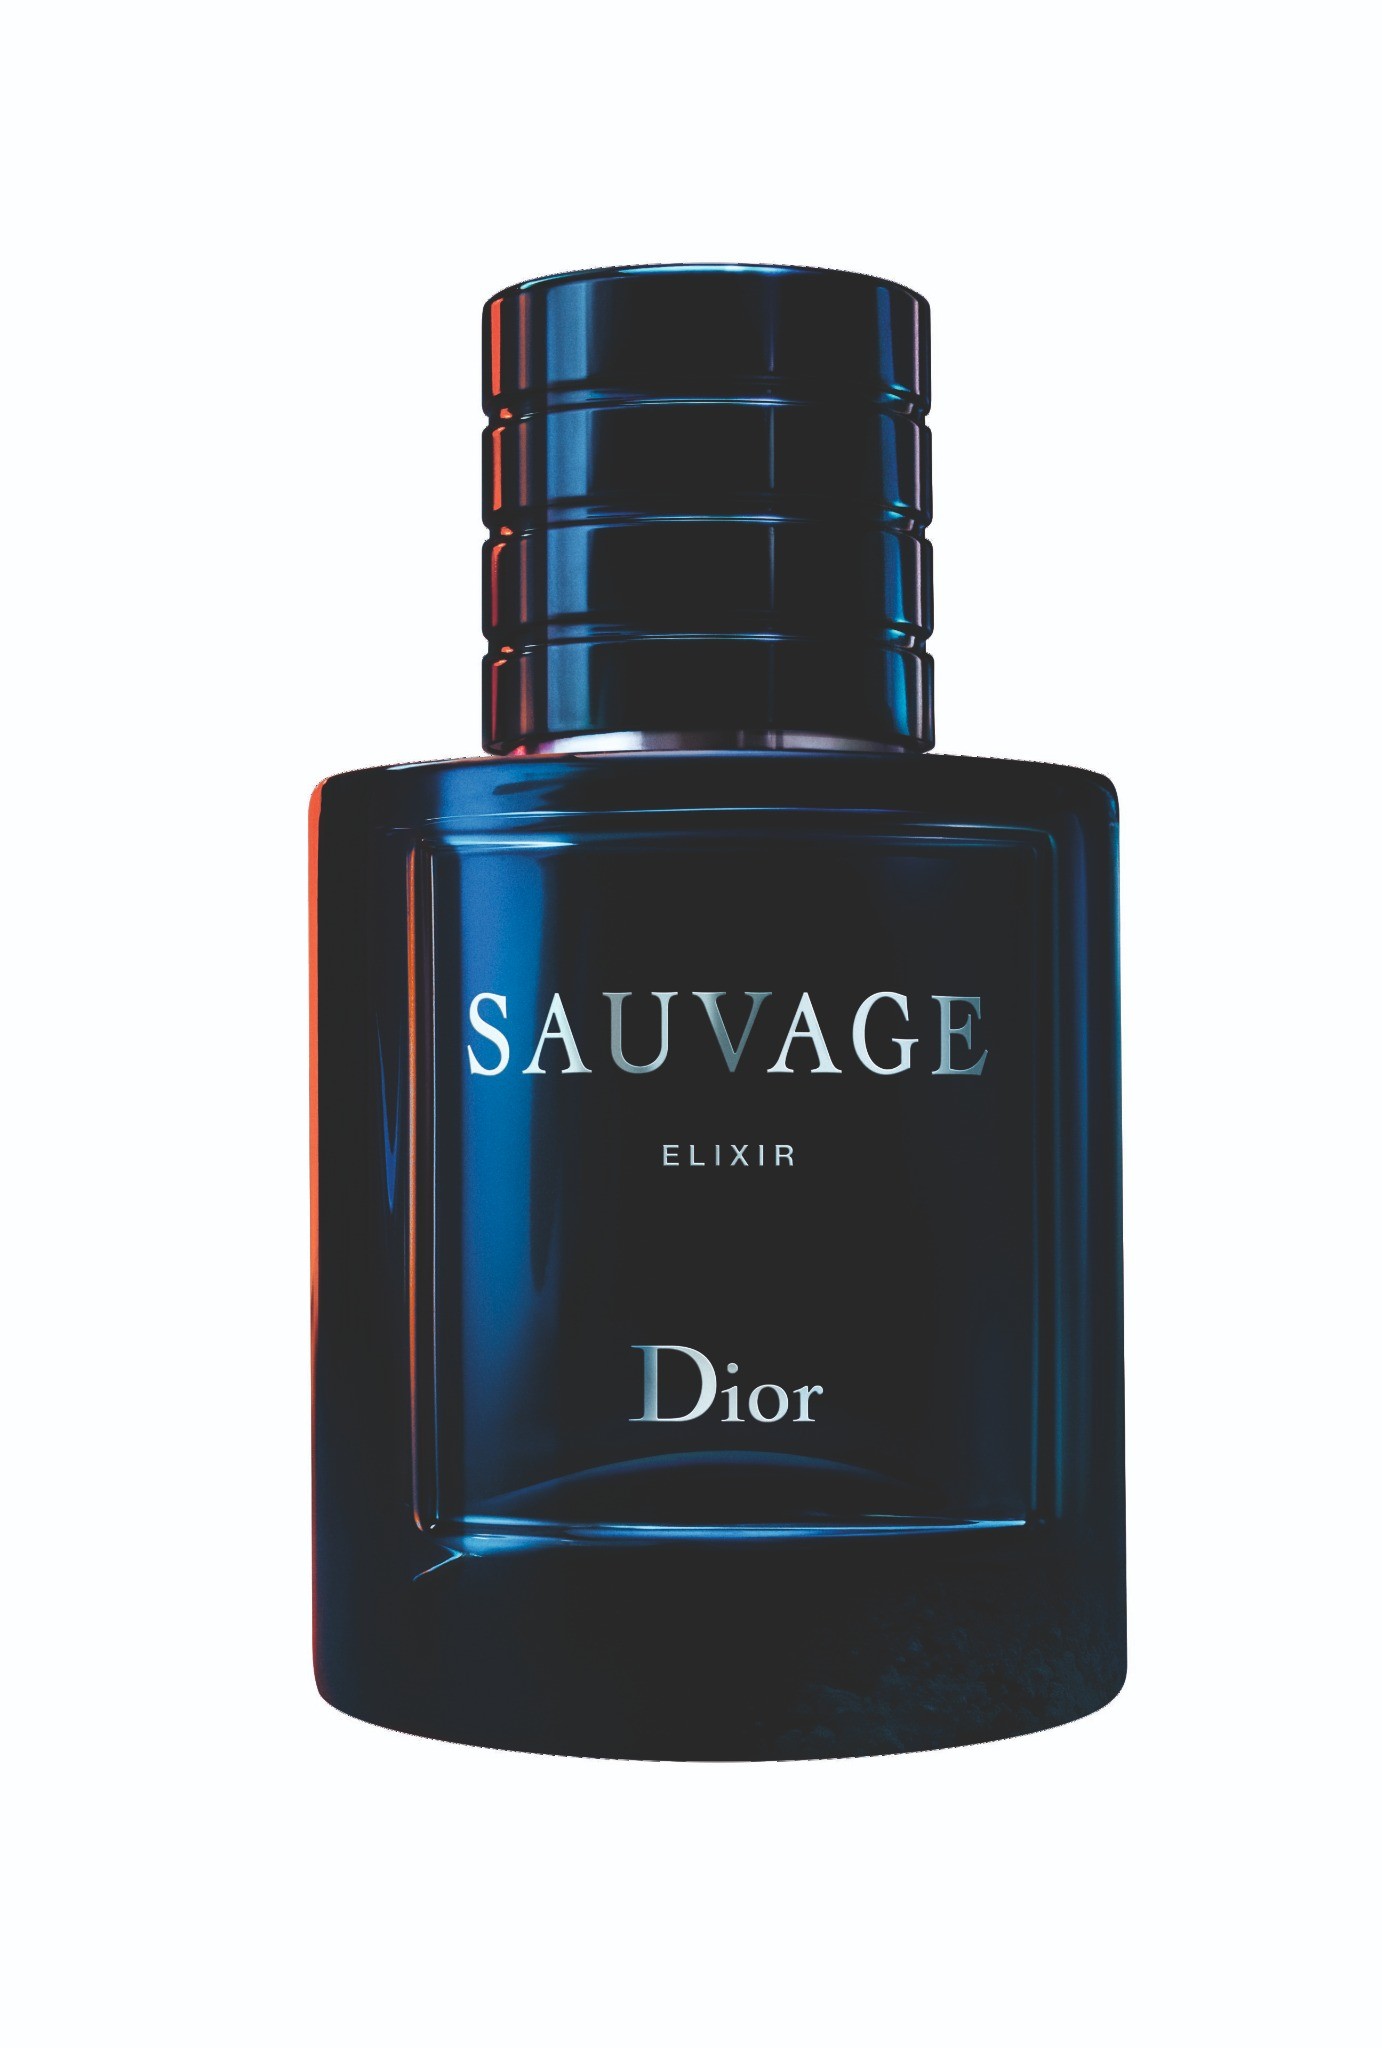 Dior Sauvage น้ำหอมผู้ชายที่ขายดีที่สุดในประเทศไทย